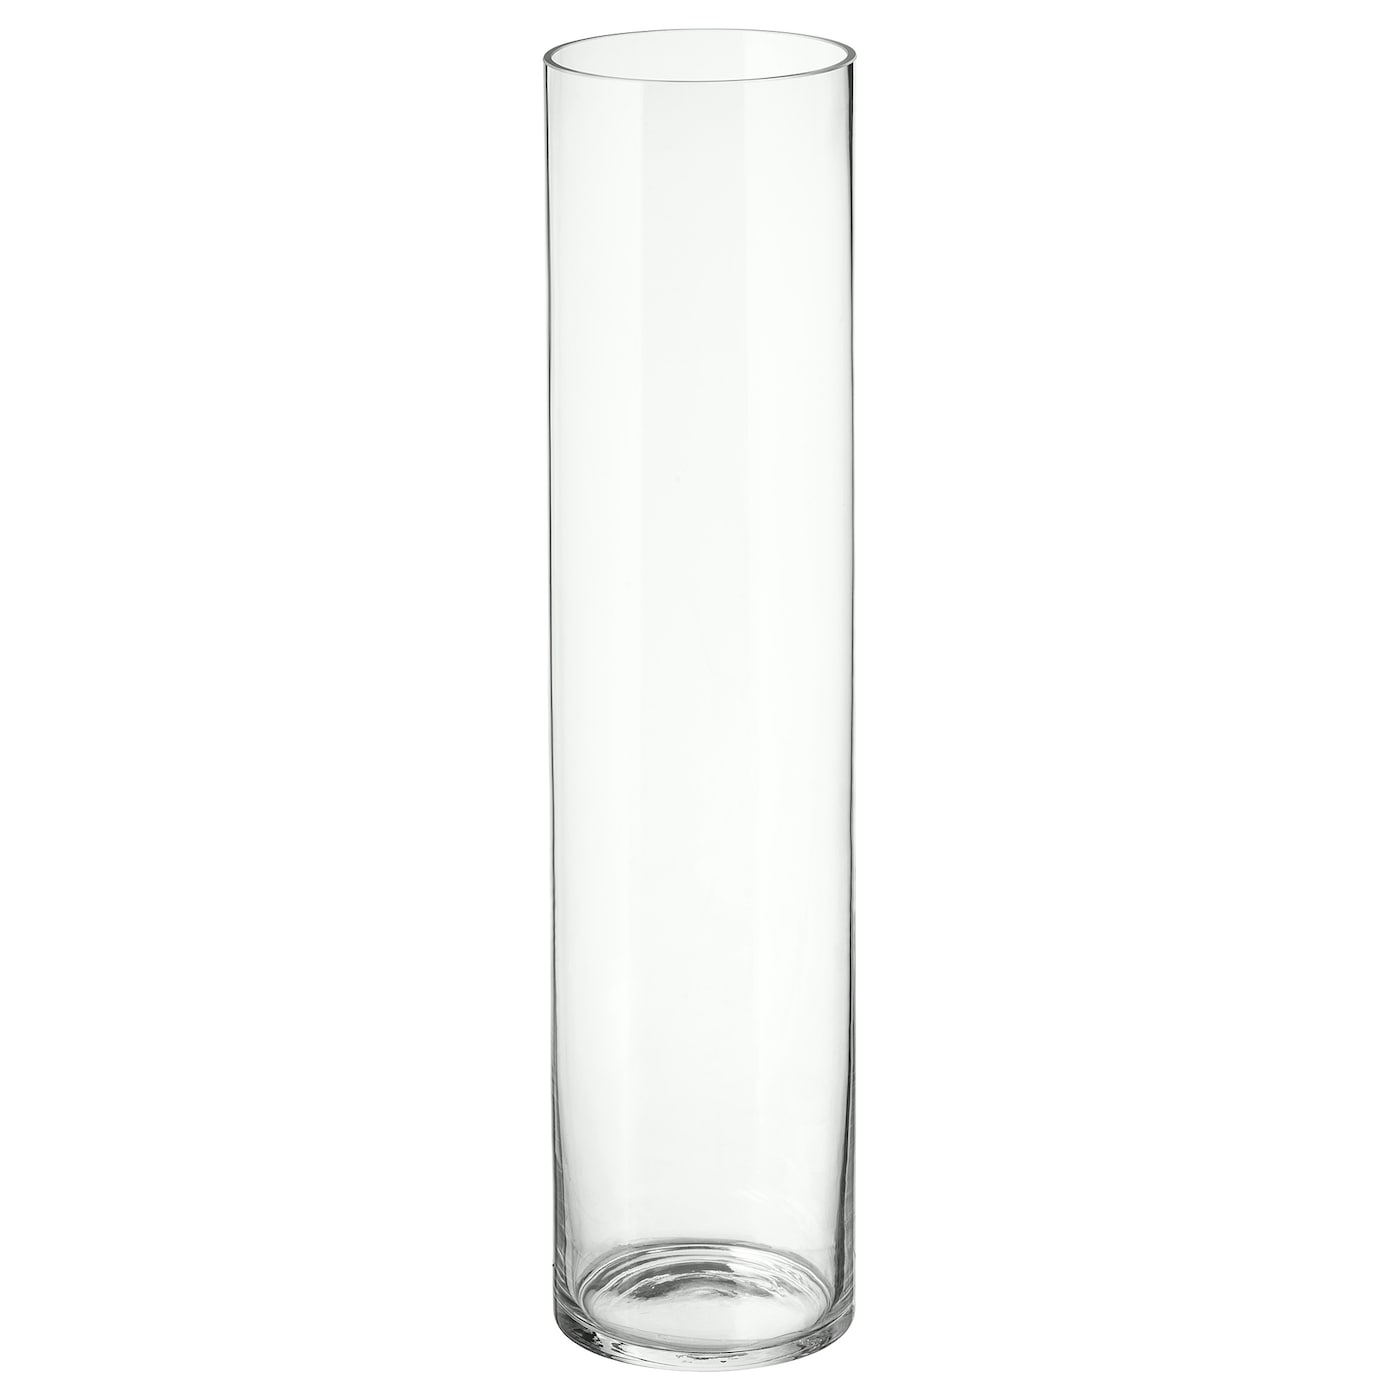 CYLINDER ЦИЛИНДР Ваза, прозрачное стекло, 68 см IKEA